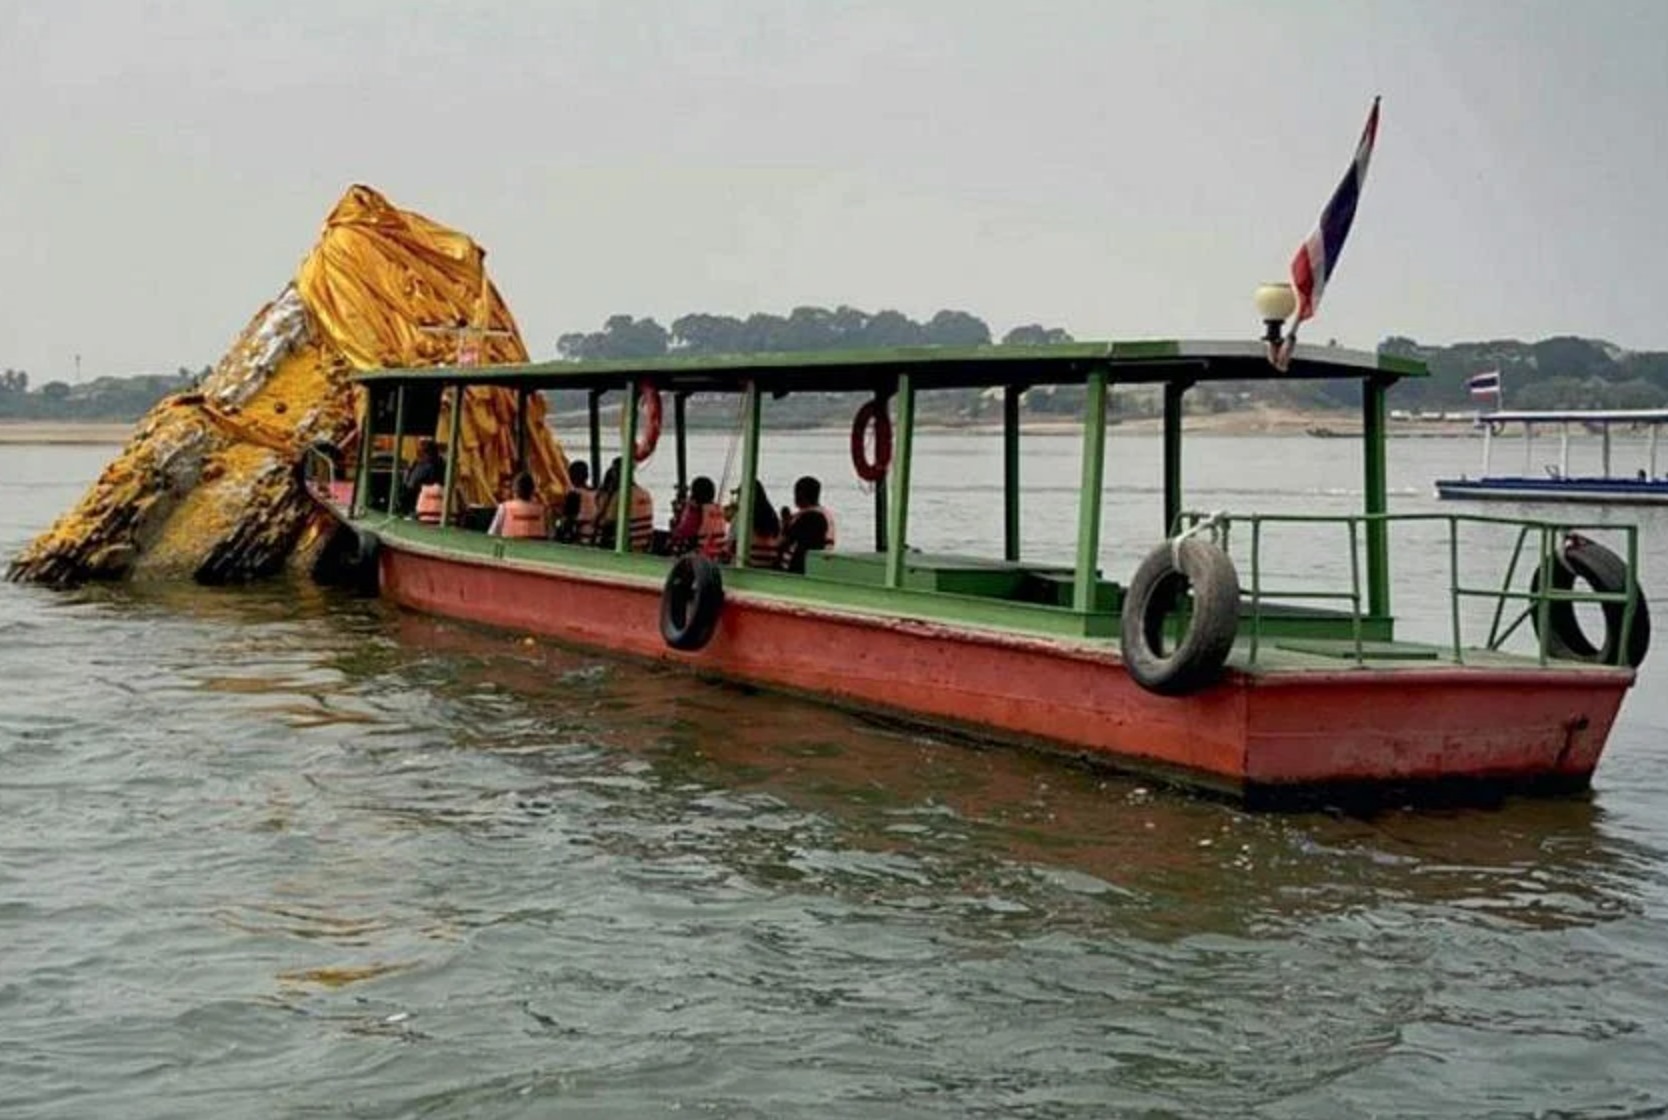 Phật tháp cổ linh thiêng bất ngờ nổi lên giữa sông Mekong